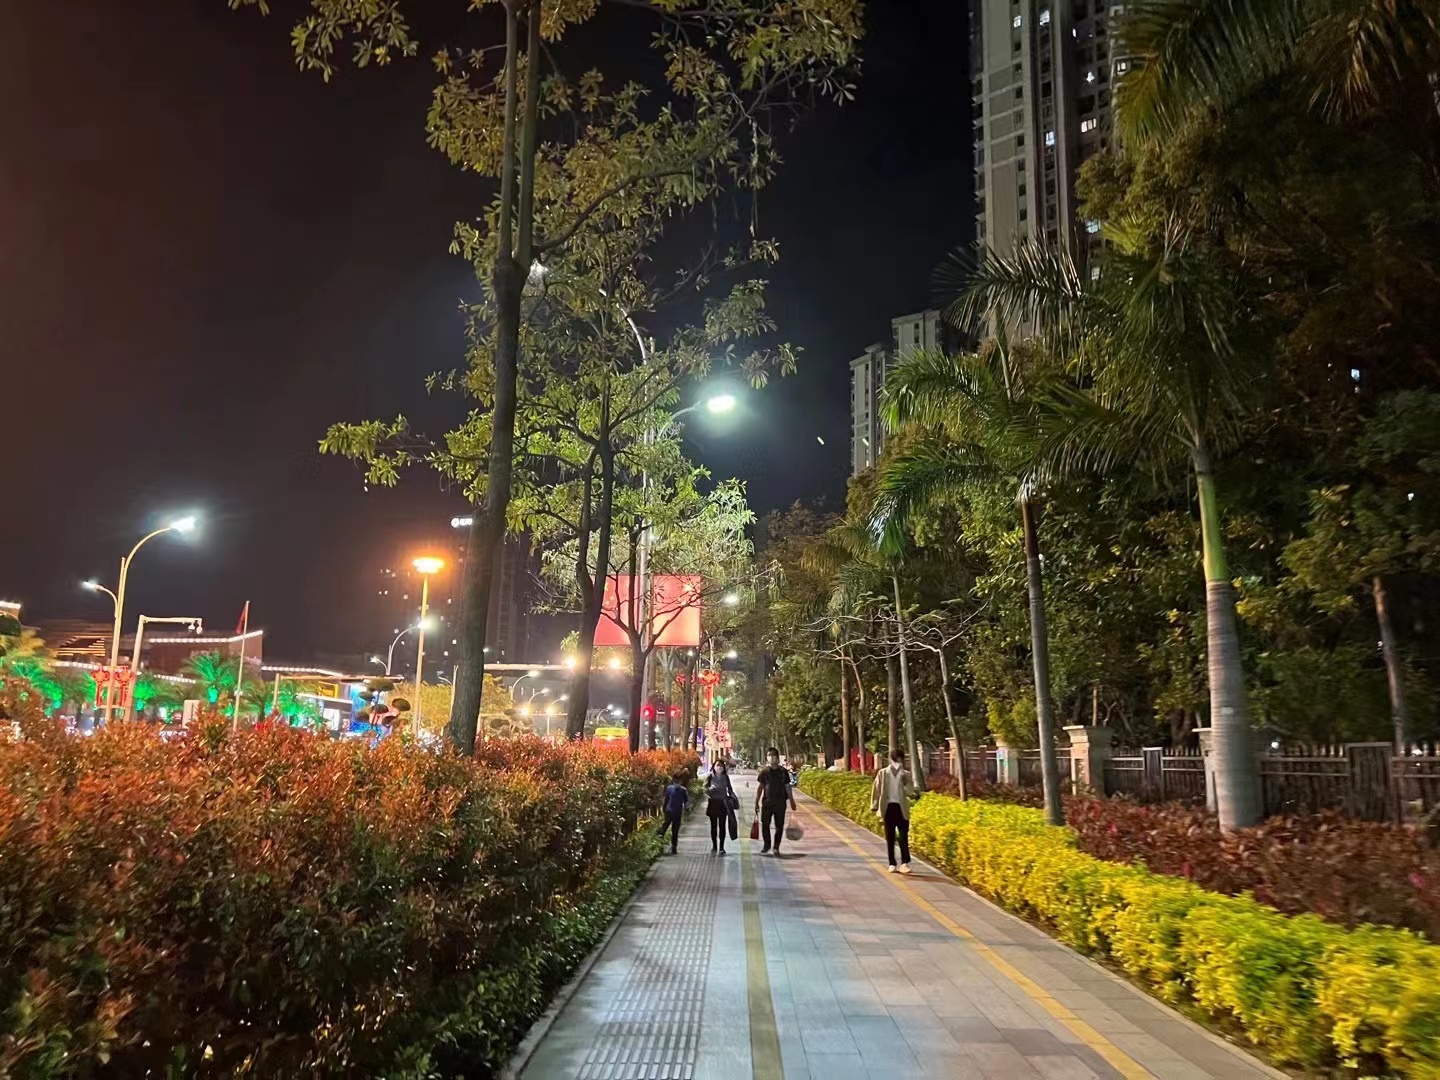 “杭州市最美绿道”评选活动进入第三个年头 助力打造“幸福之窗”